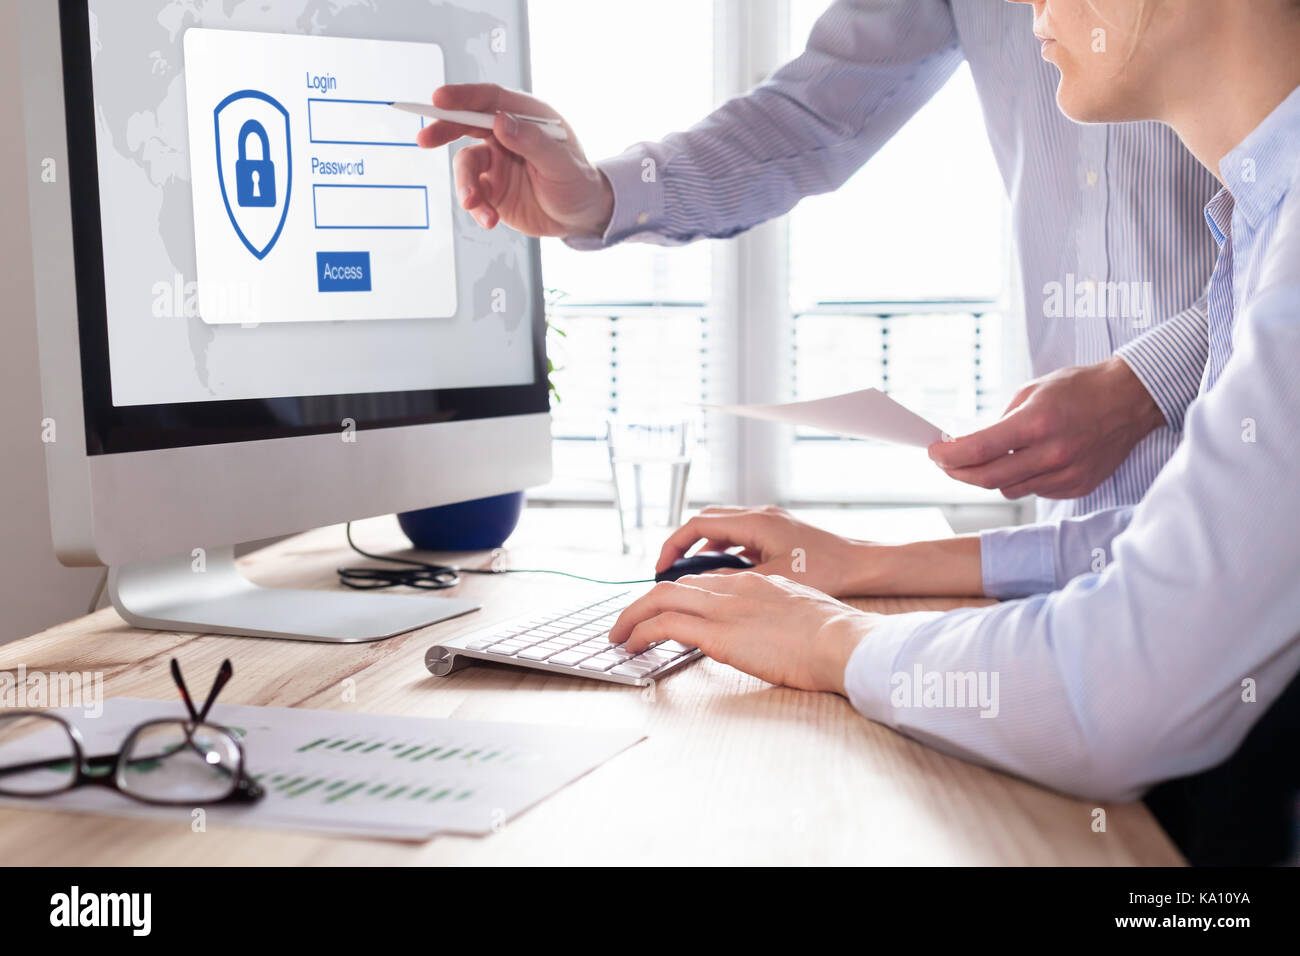 Concept de sécurité cybernétique avec manager fournissant des informations d'authentification (login, mot de passe) à l'entreprise personne à avoir accès à des données confidentielles sur l'ordinateur Banque D'Images